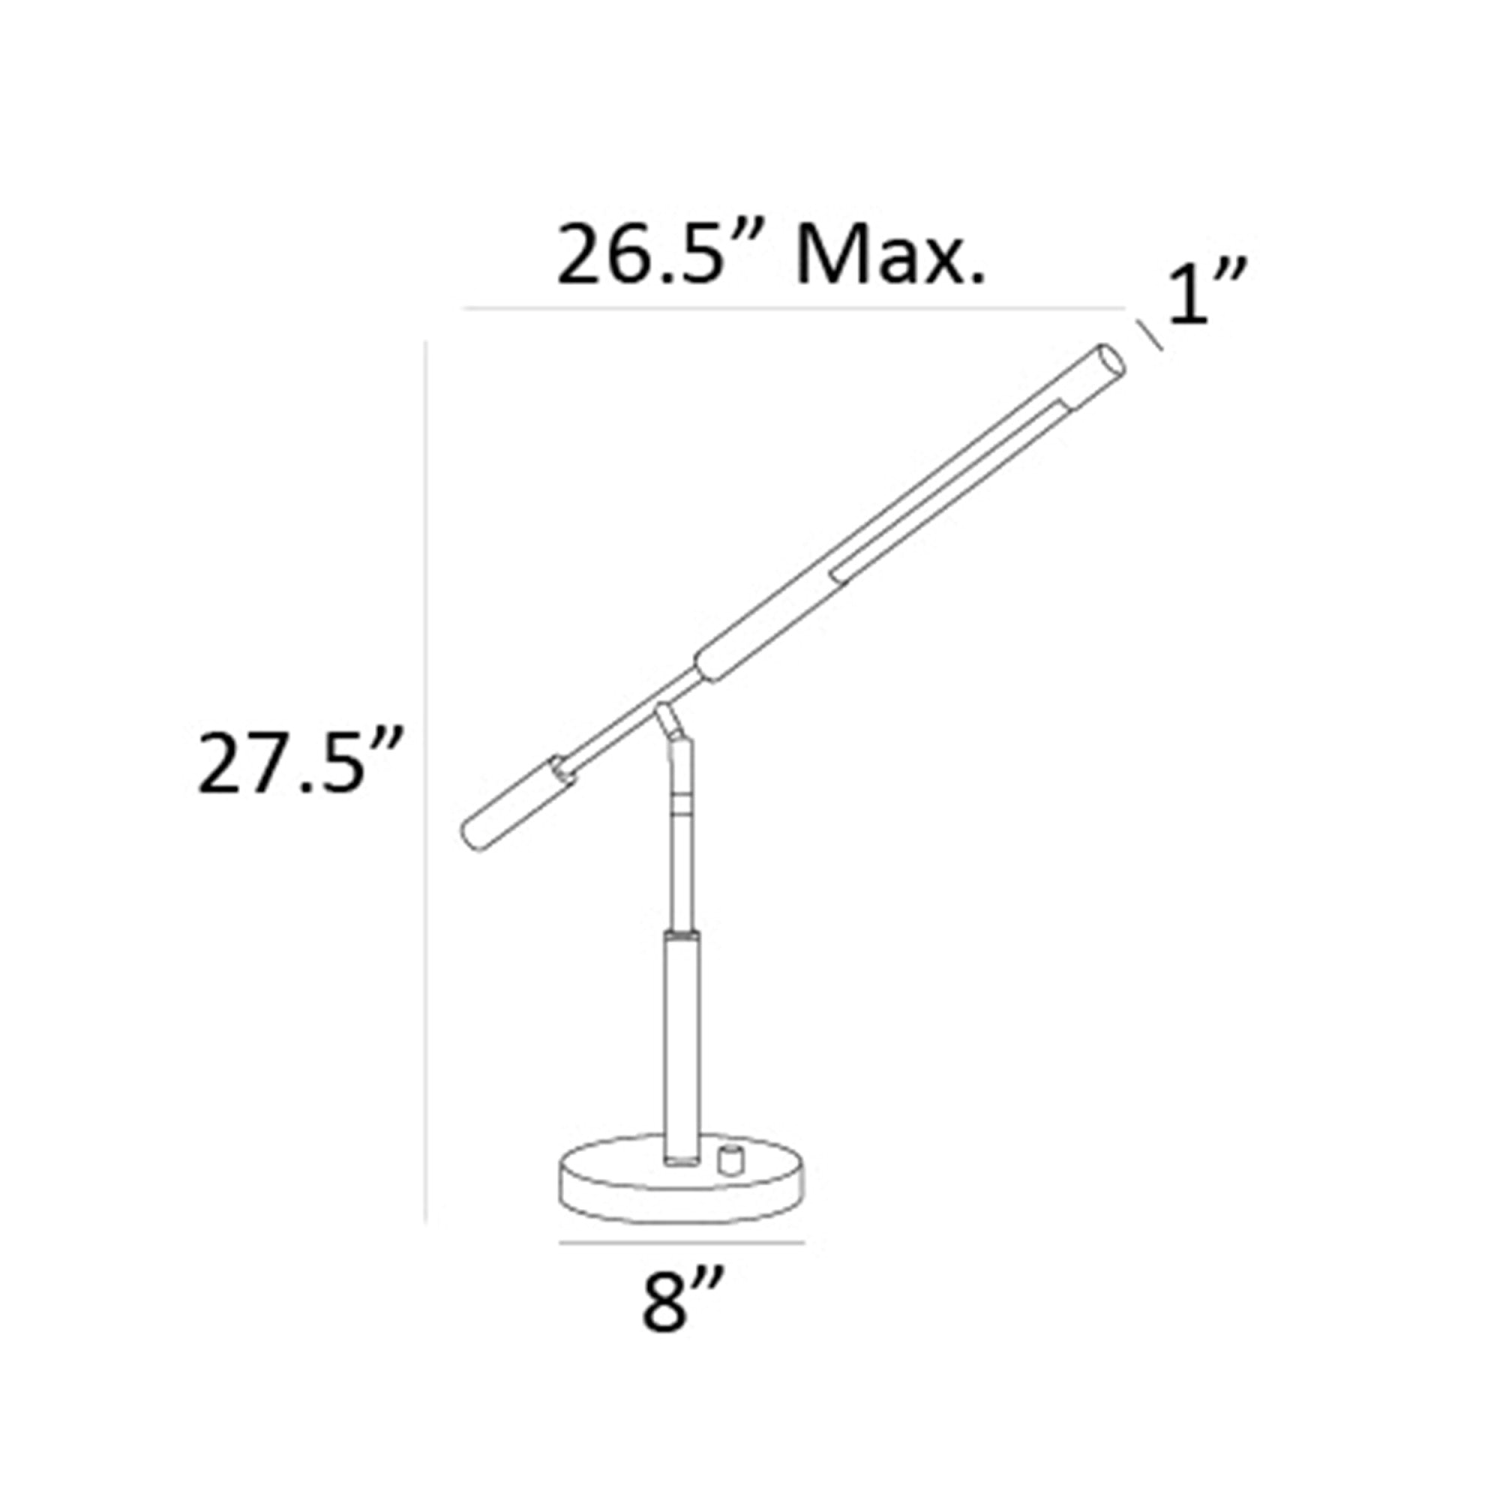 Cayden Desk Lamp Measurements